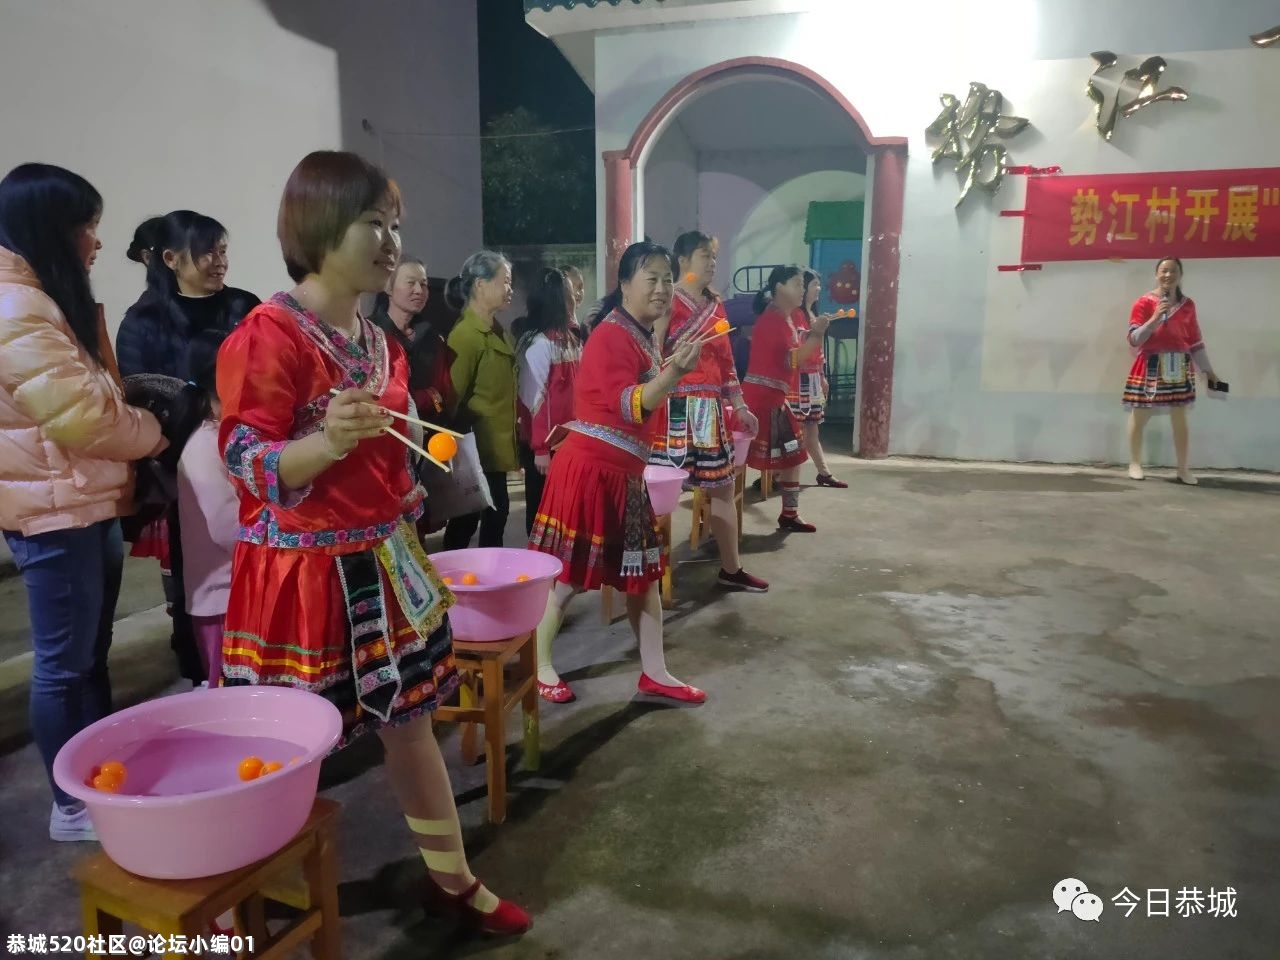 来！一起看看大恭城的妇女同胞们是如何庆祝“三八”妇女节的154 / 作者:论坛小编01 / 帖子ID:283134